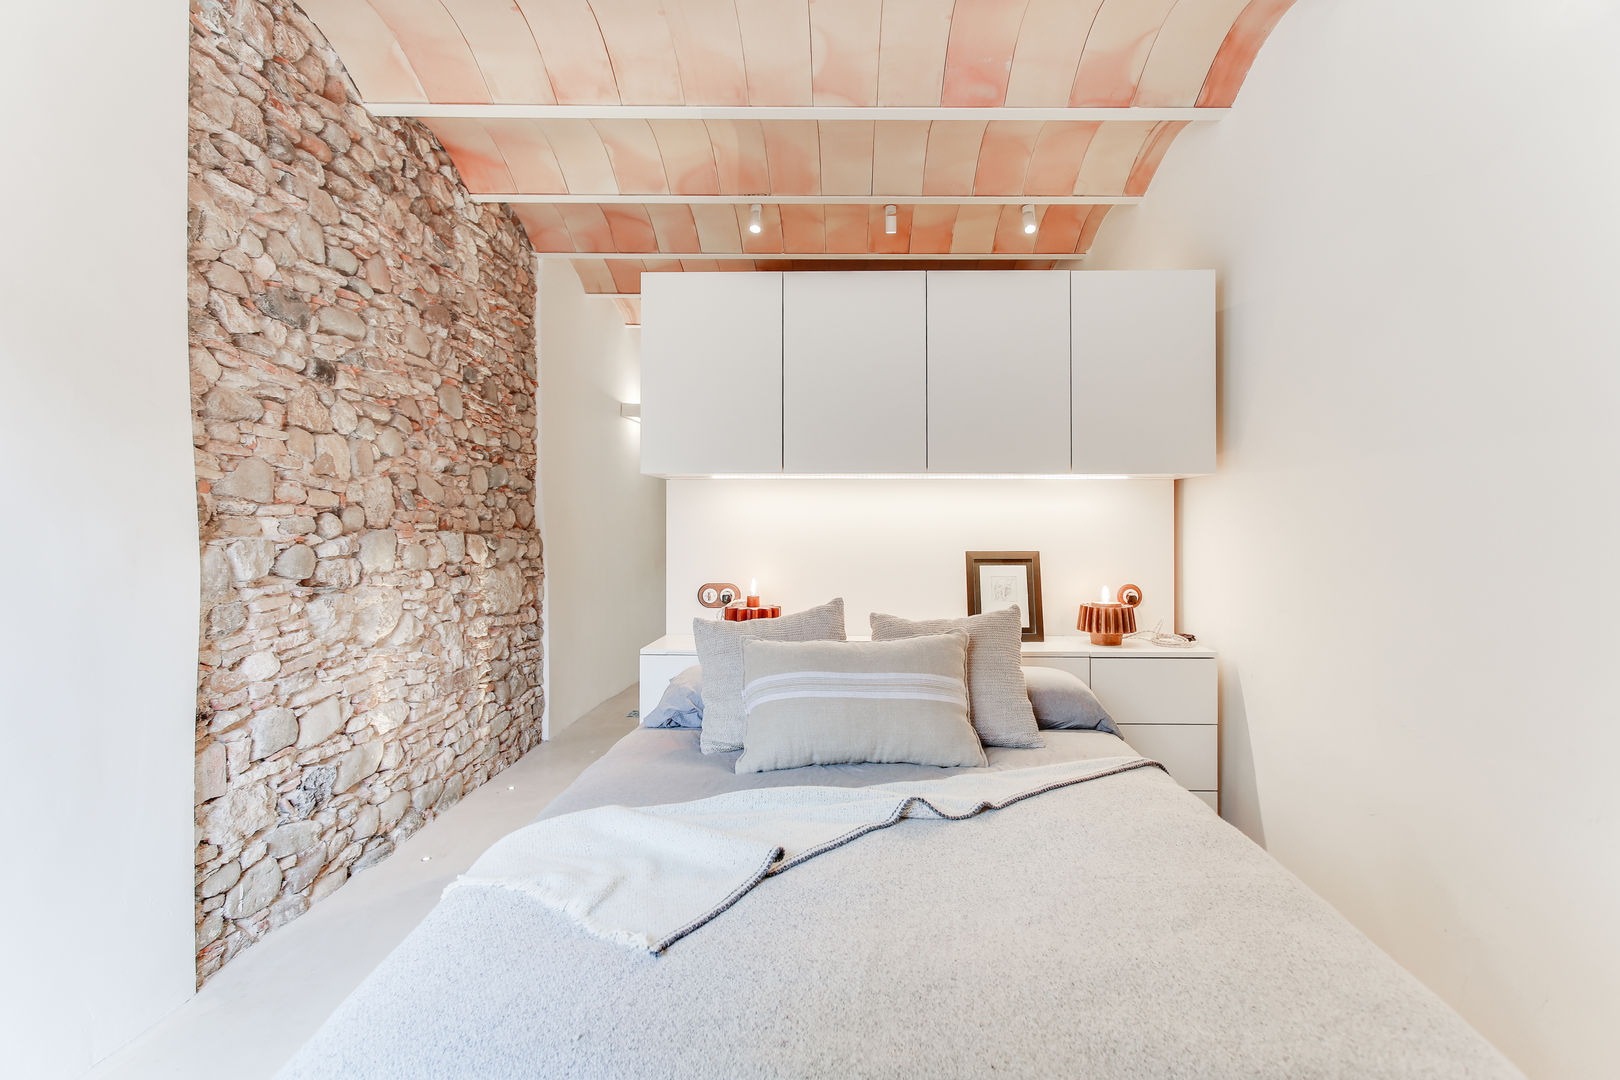 Casa de 3 niveles con rehabilitación integral para sus 140m2 , Lara Pujol | Interiorismo & Proyectos de diseño Lara Pujol | Interiorismo & Proyectos de diseño Mediterranean style bedroom